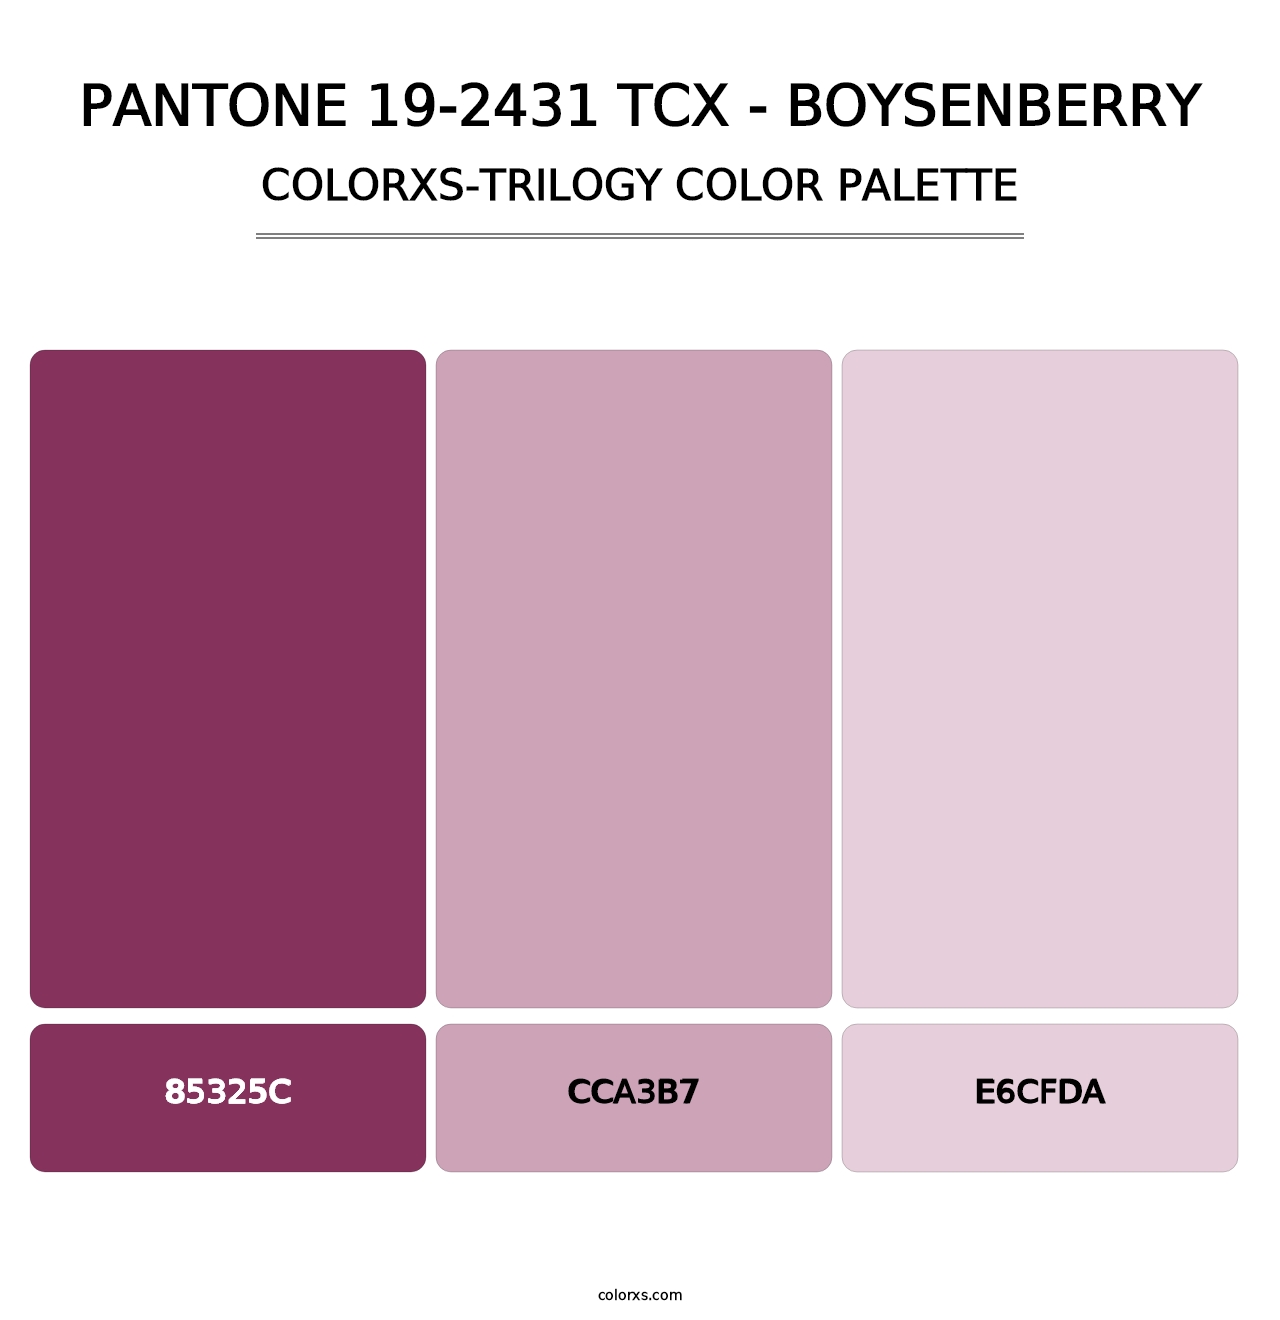 PANTONE 19-2431 TCX - Boysenberry - Colorxs Trilogy Palette